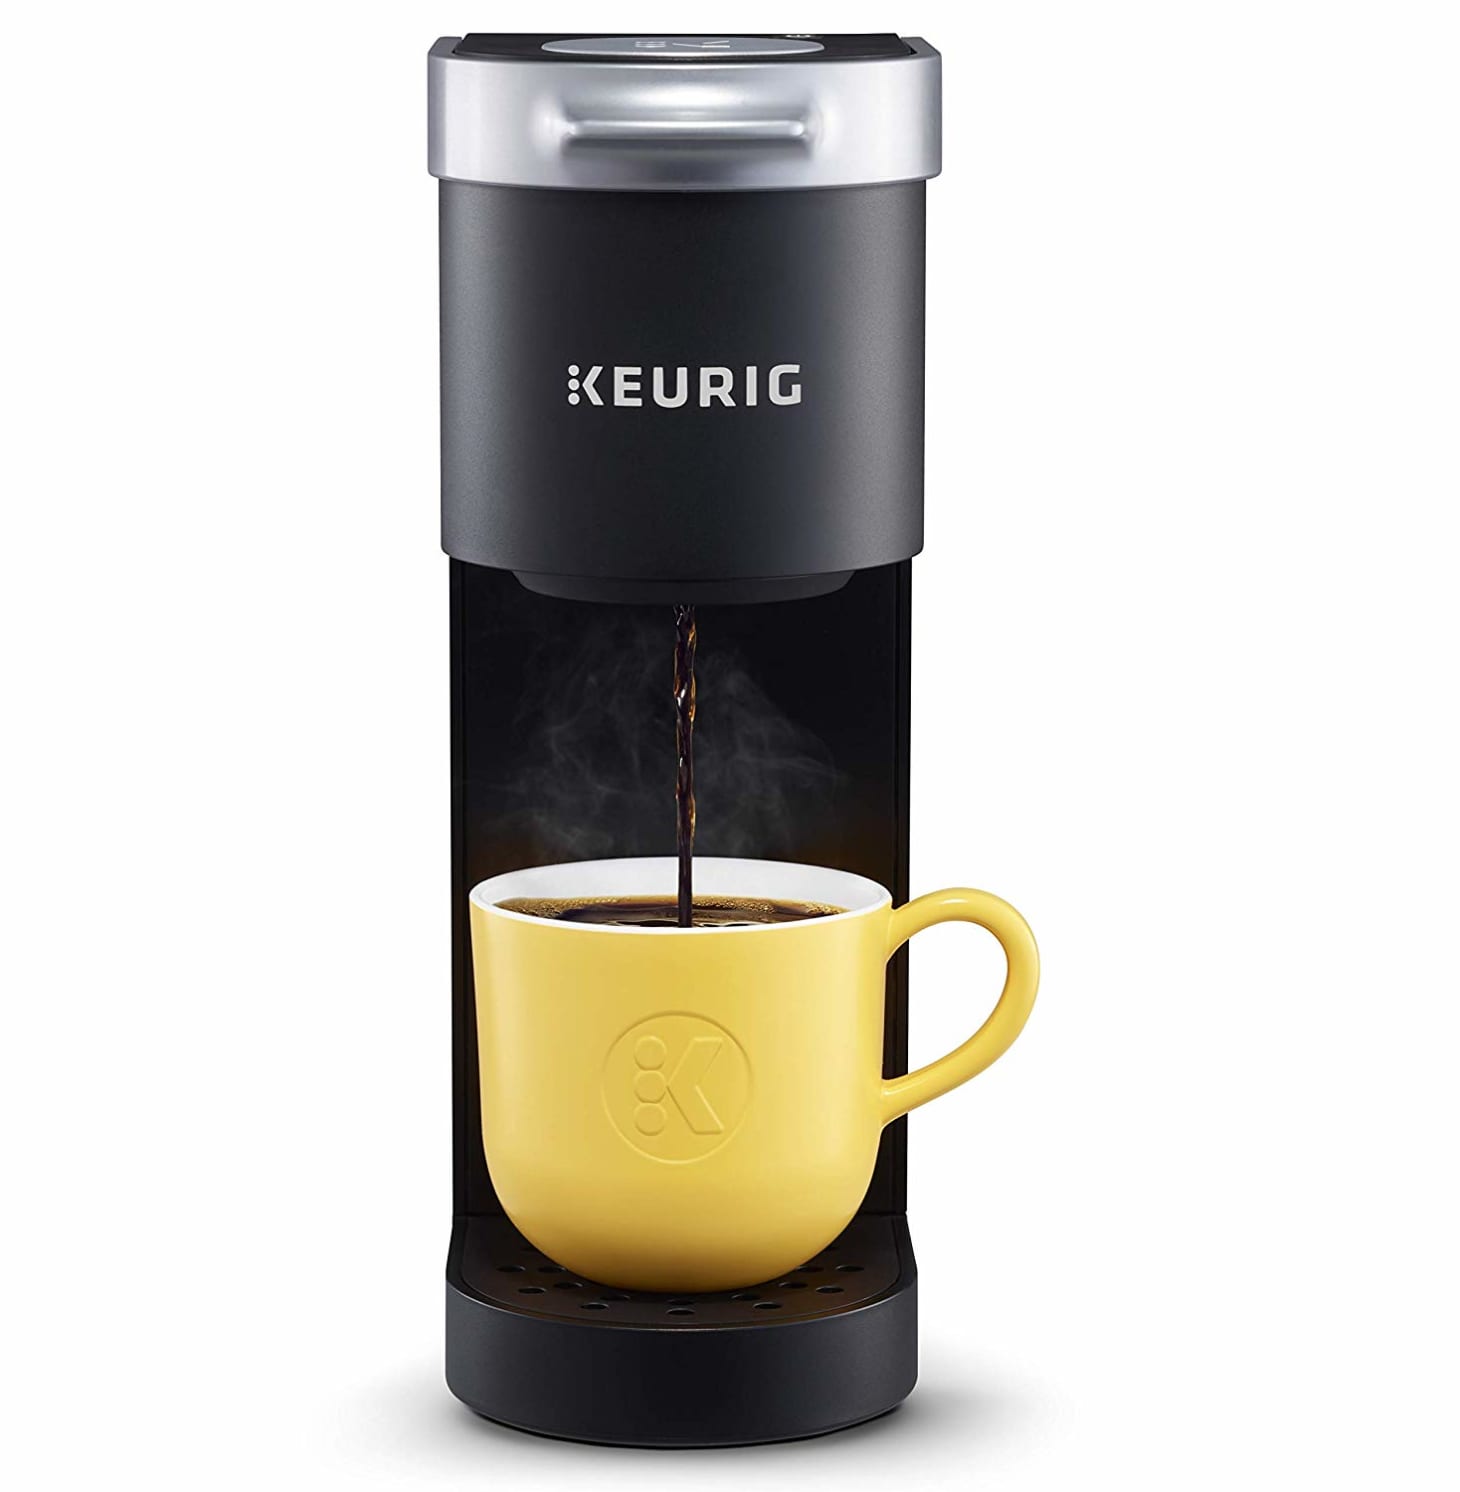 Keurig Kmini Single Serve Coffee Maker